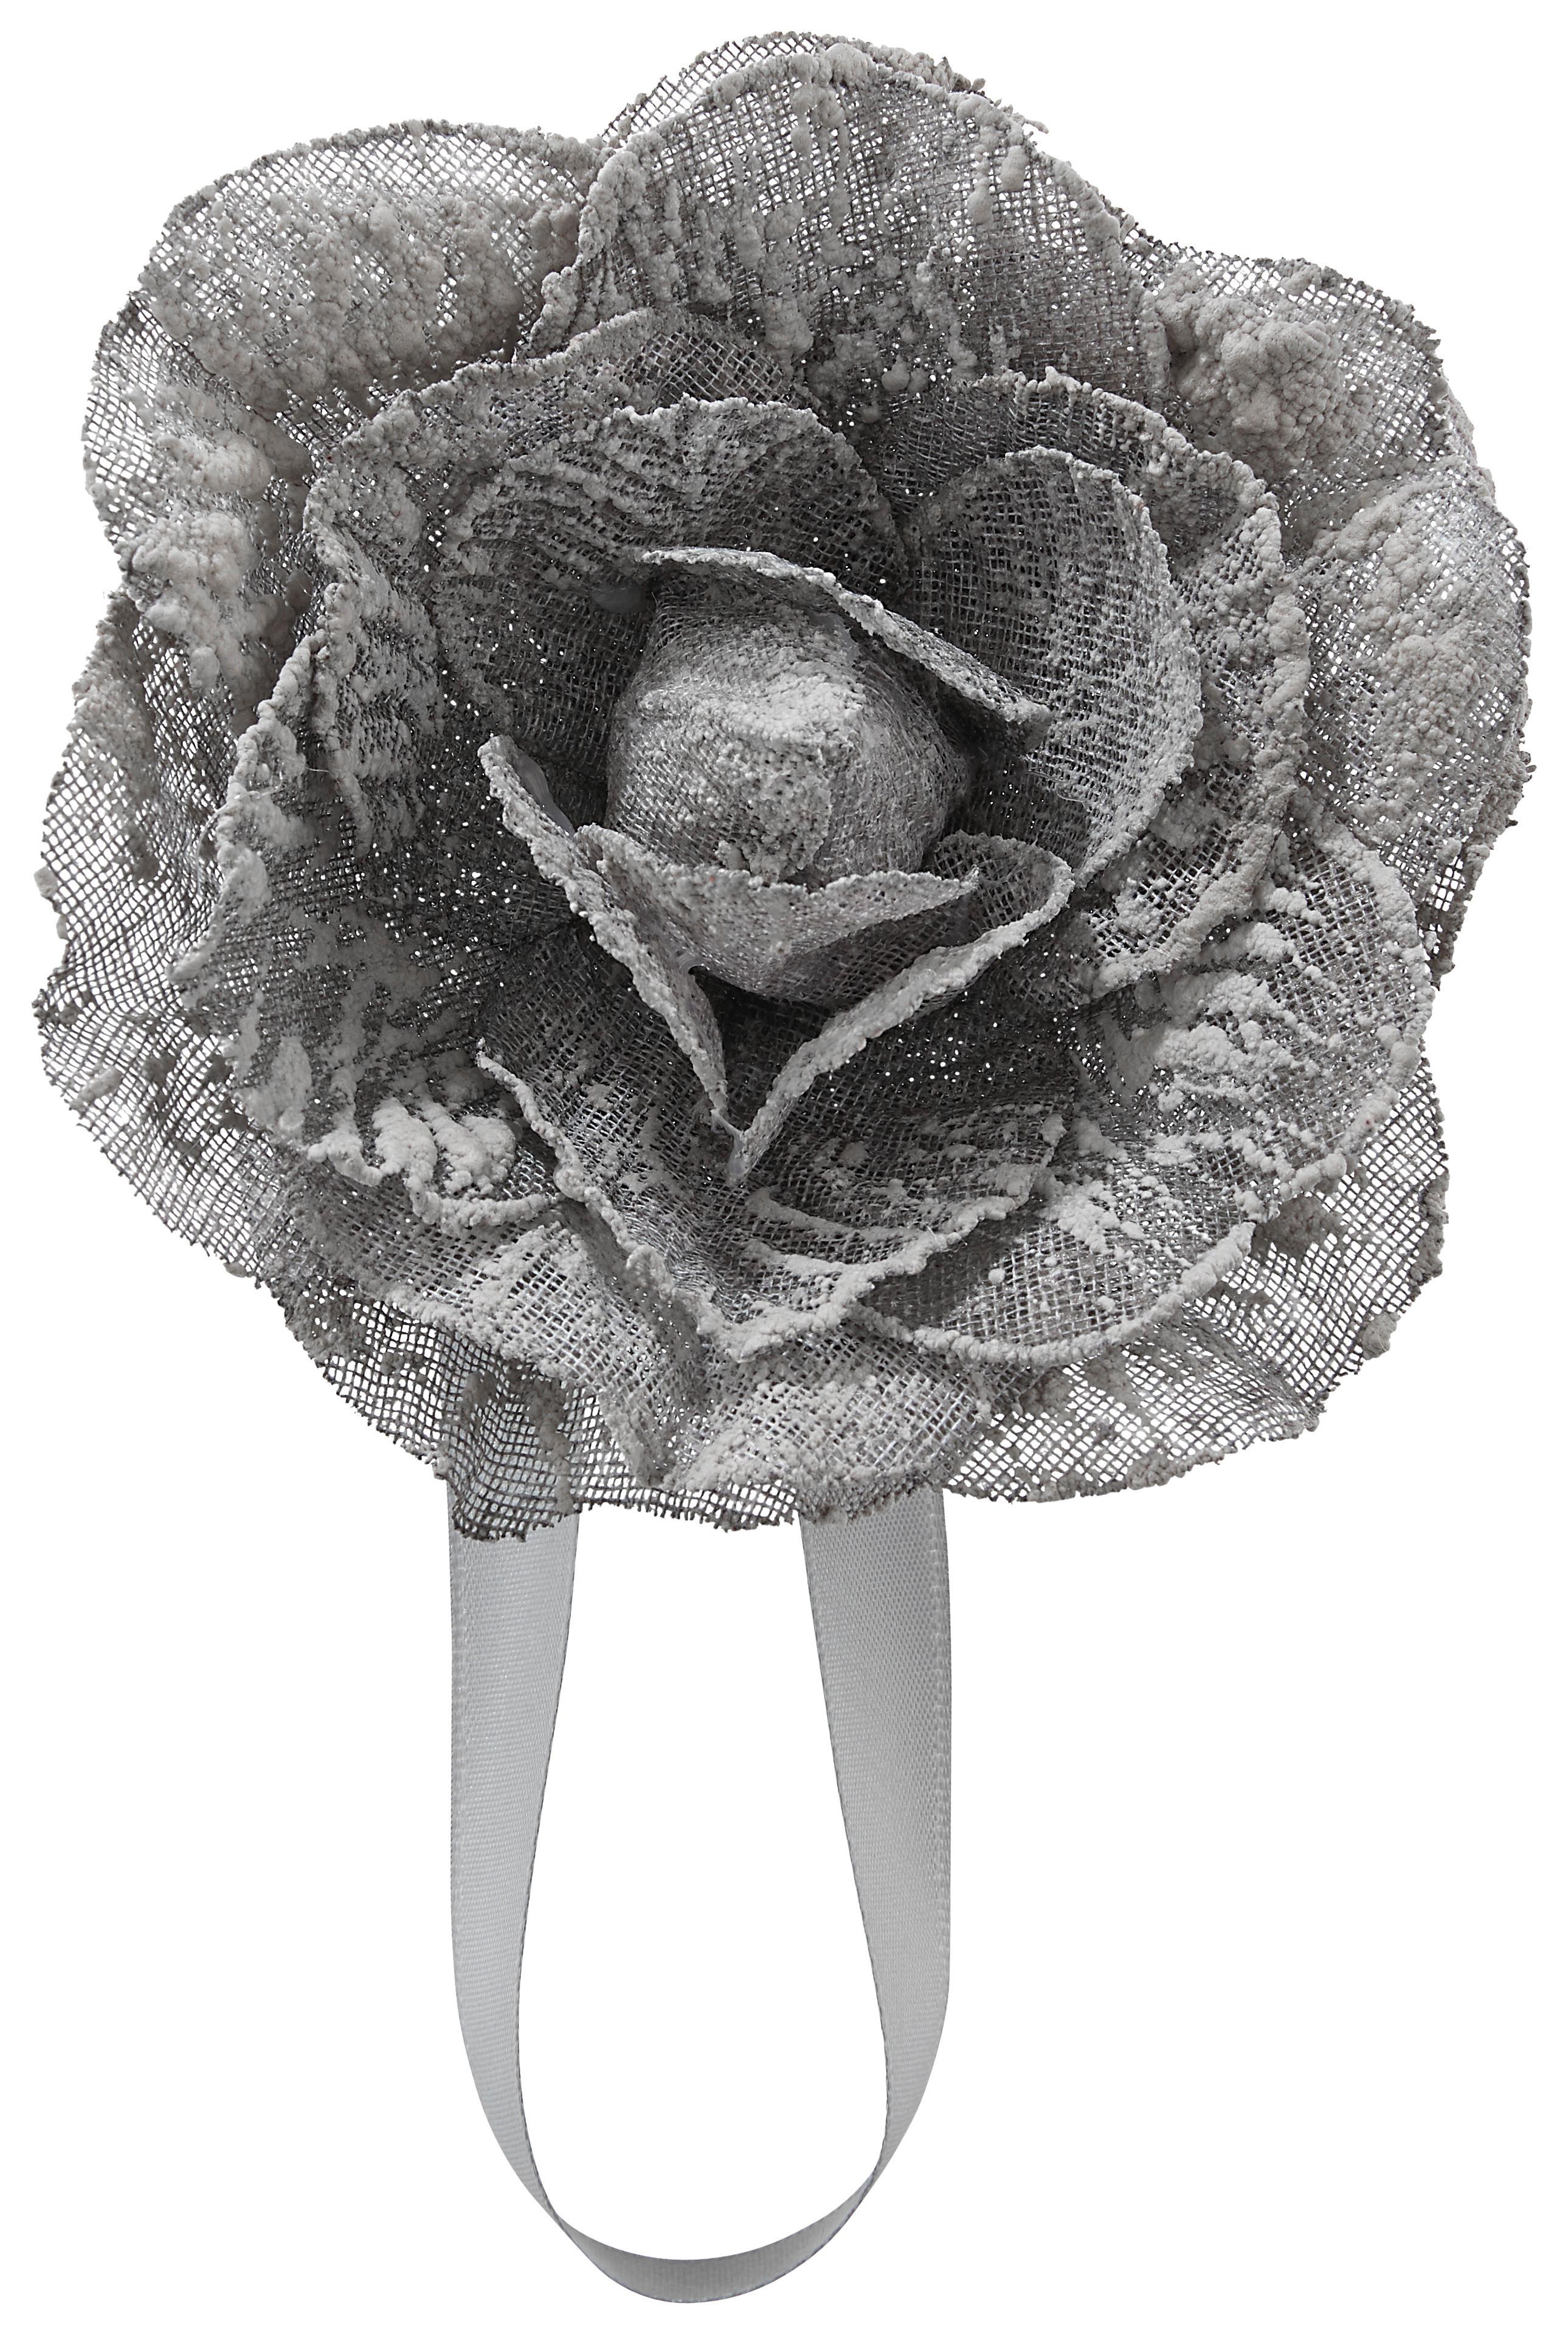 Riasiaca Spona Rose - antracitová, Romantický / Vidiecky, textil (11cm) - Modern Living